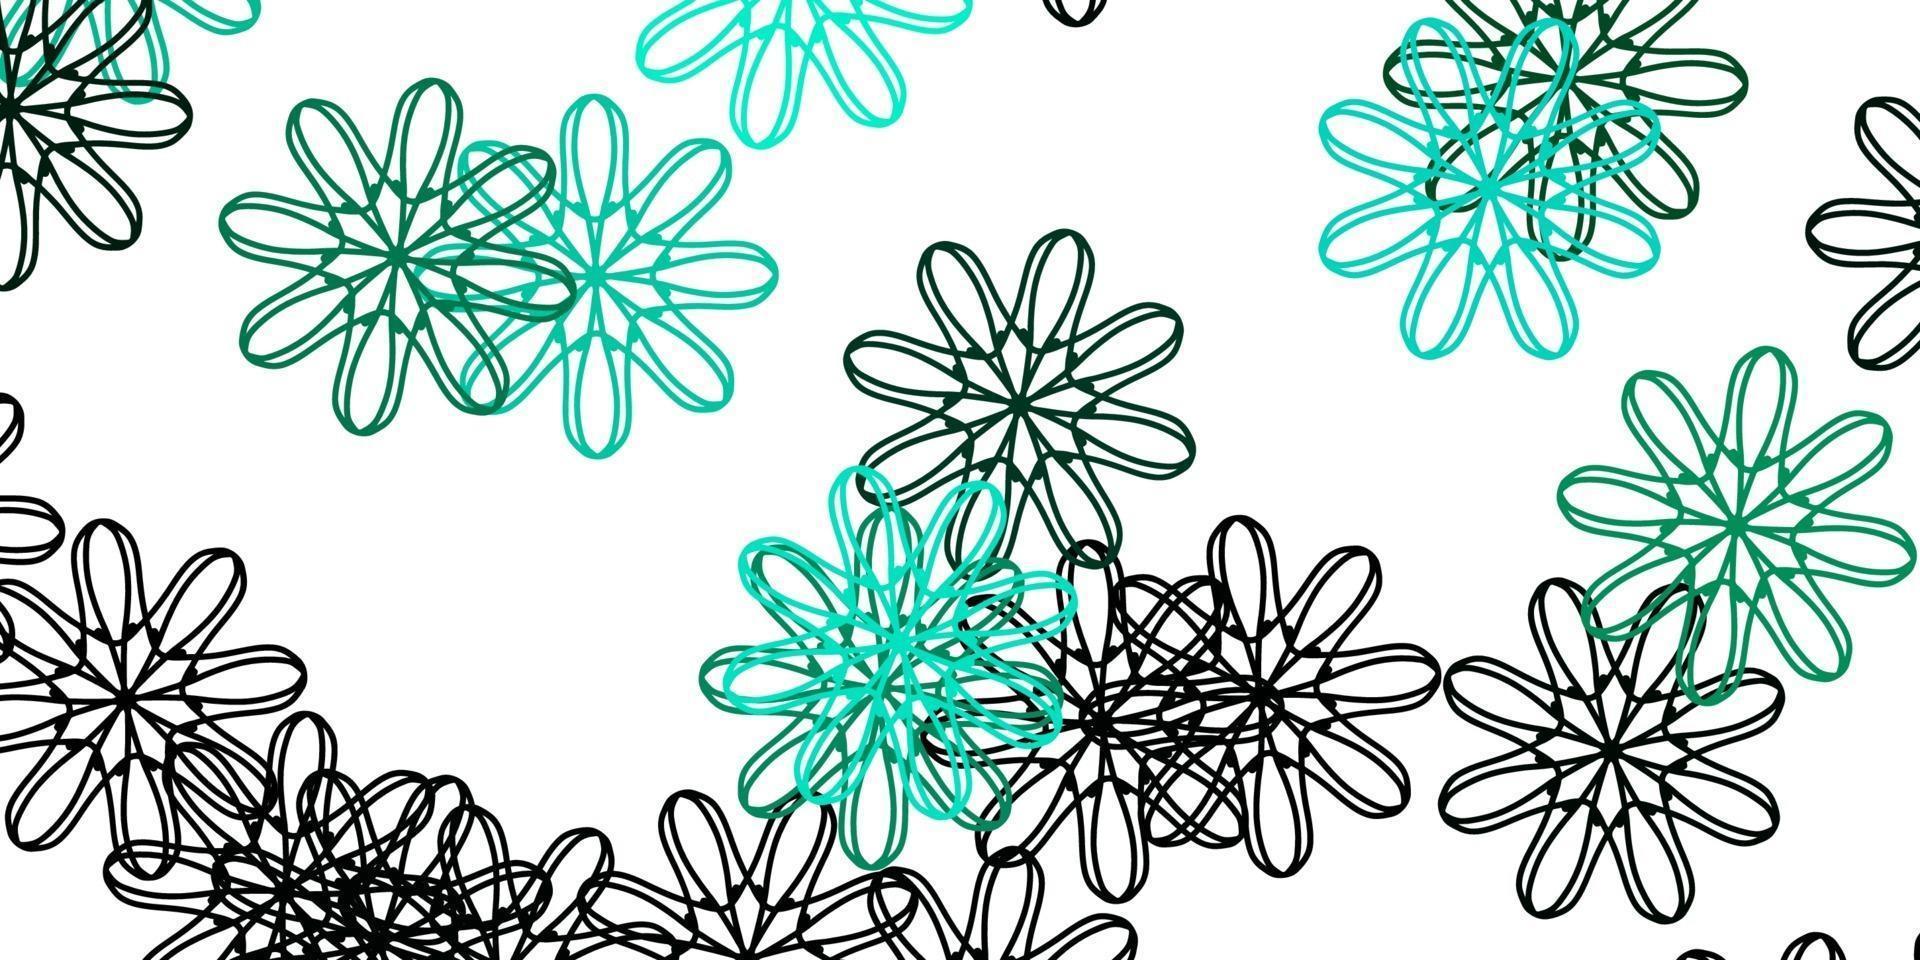 modello di doodle vettoriale verde chiaro con fiori.